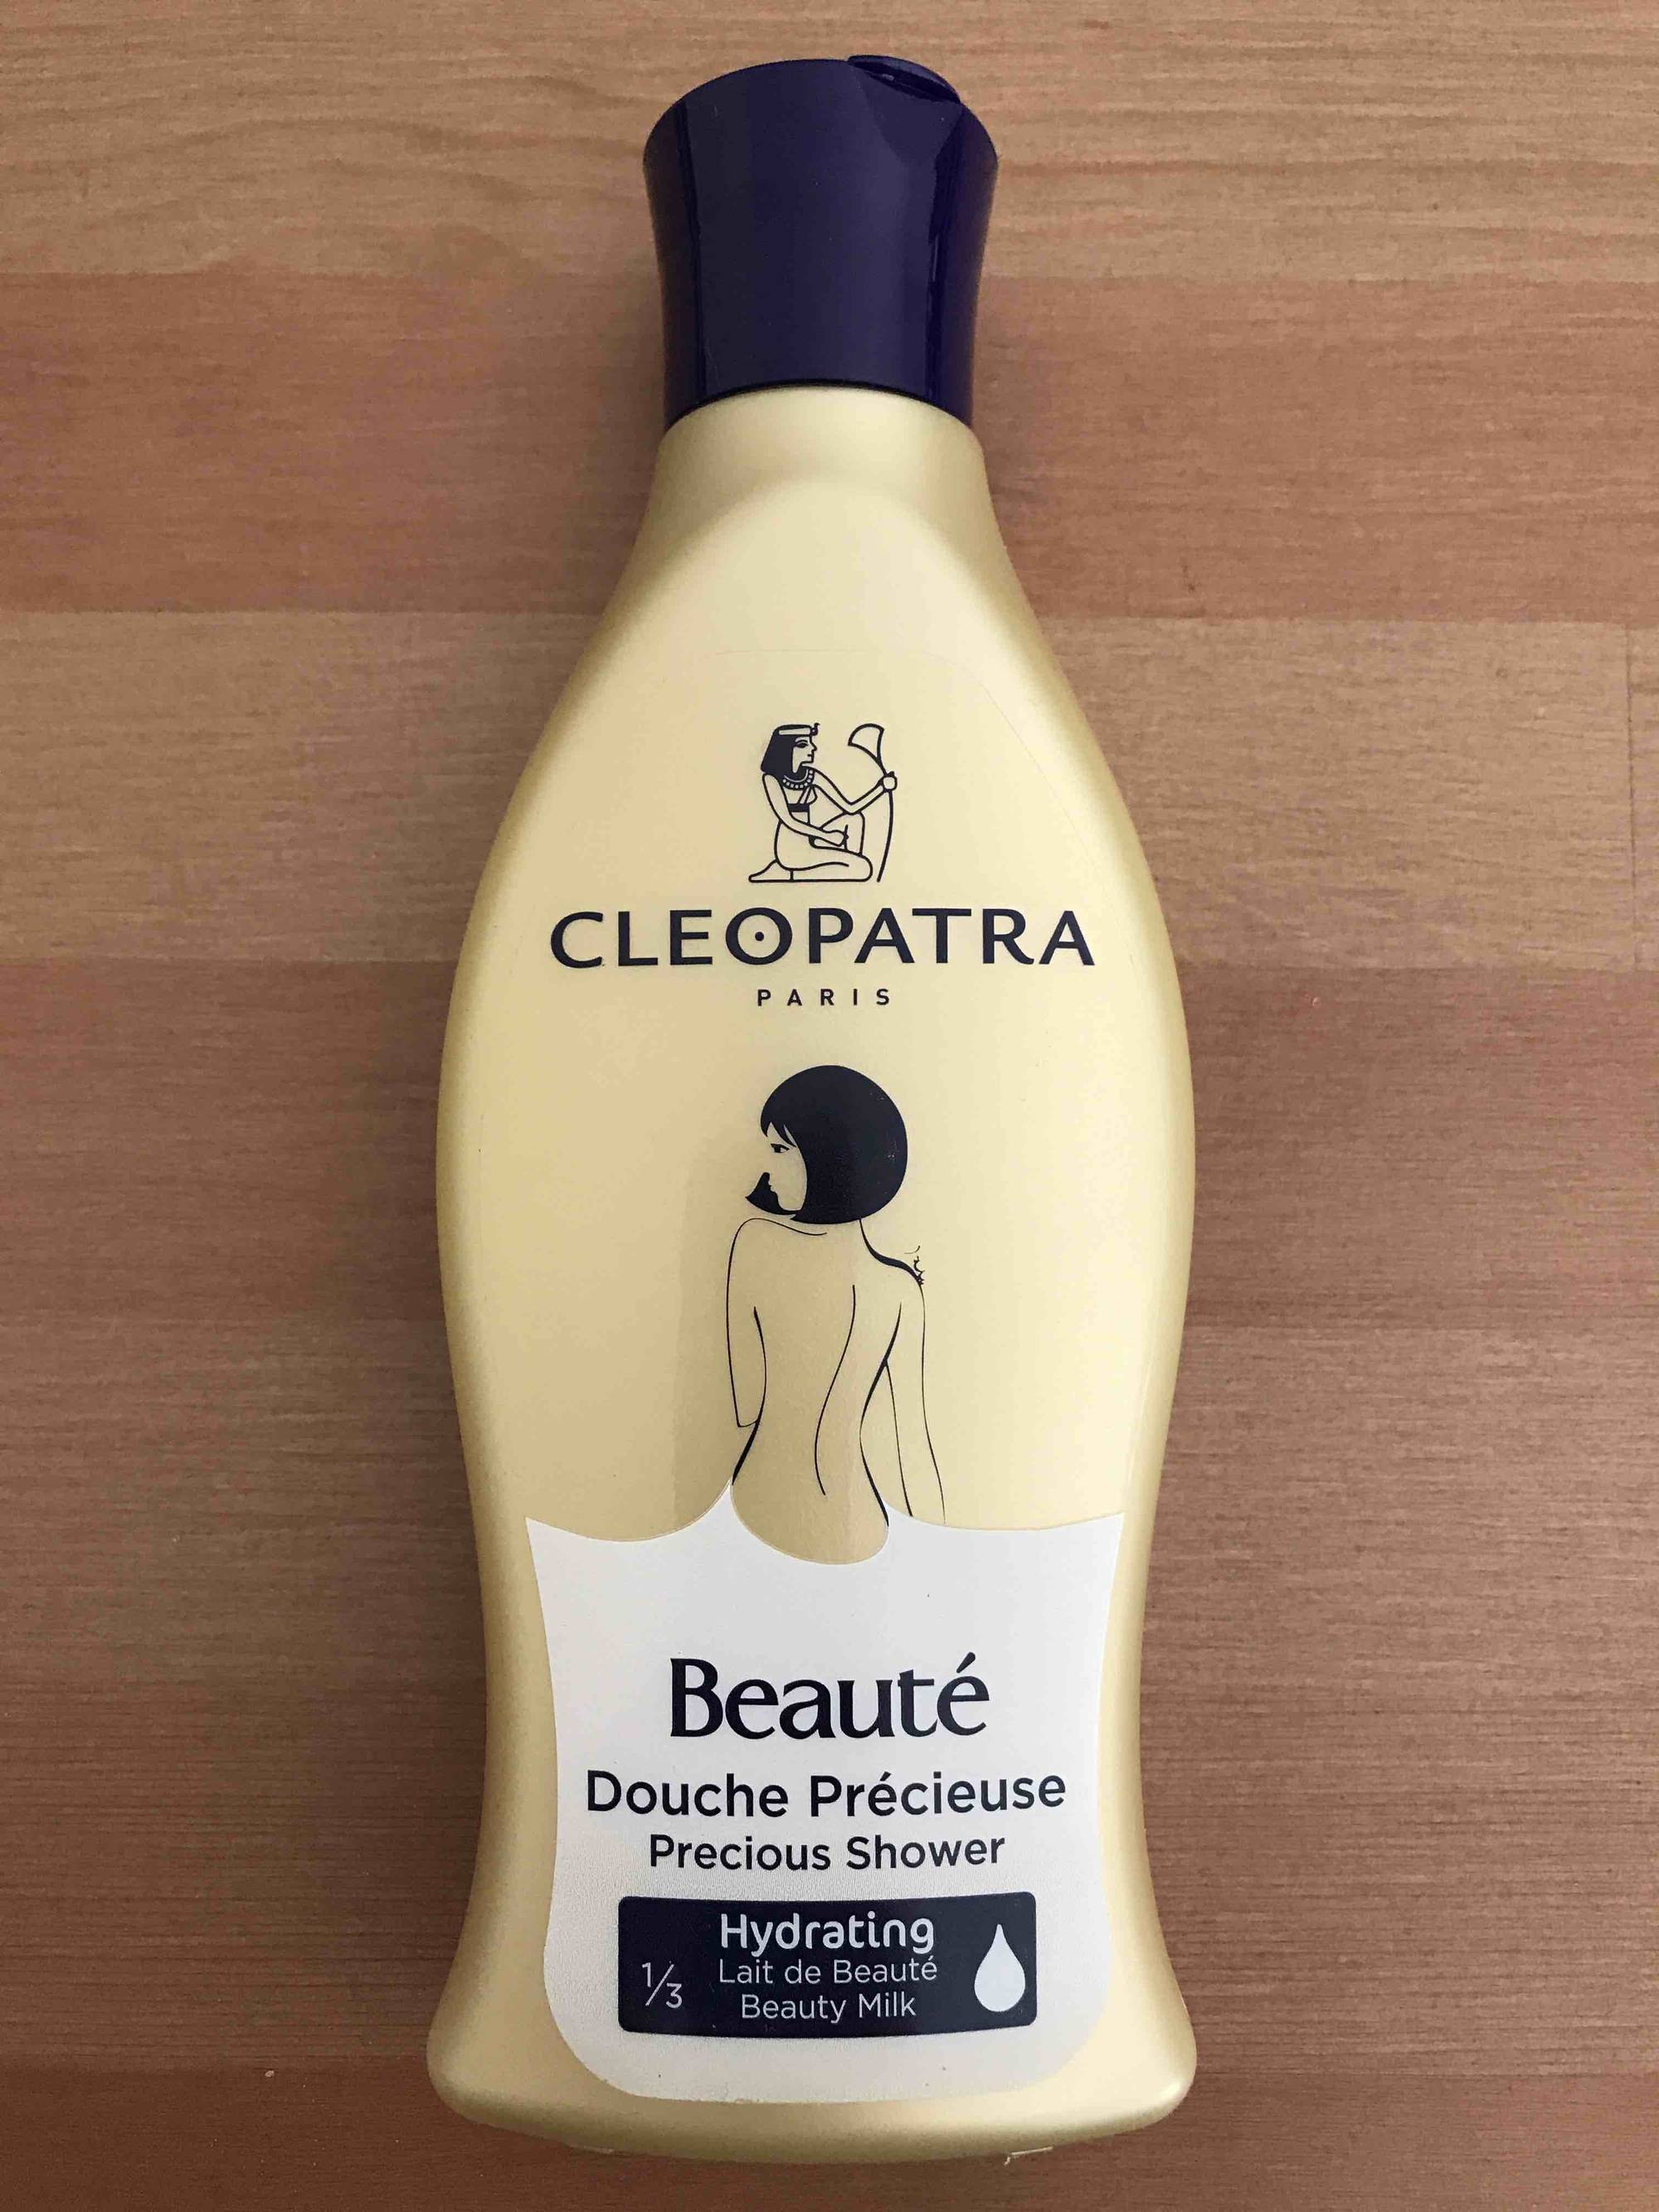 CLEOPATRA PARIS - Beauté - Douche précieuse hydrating